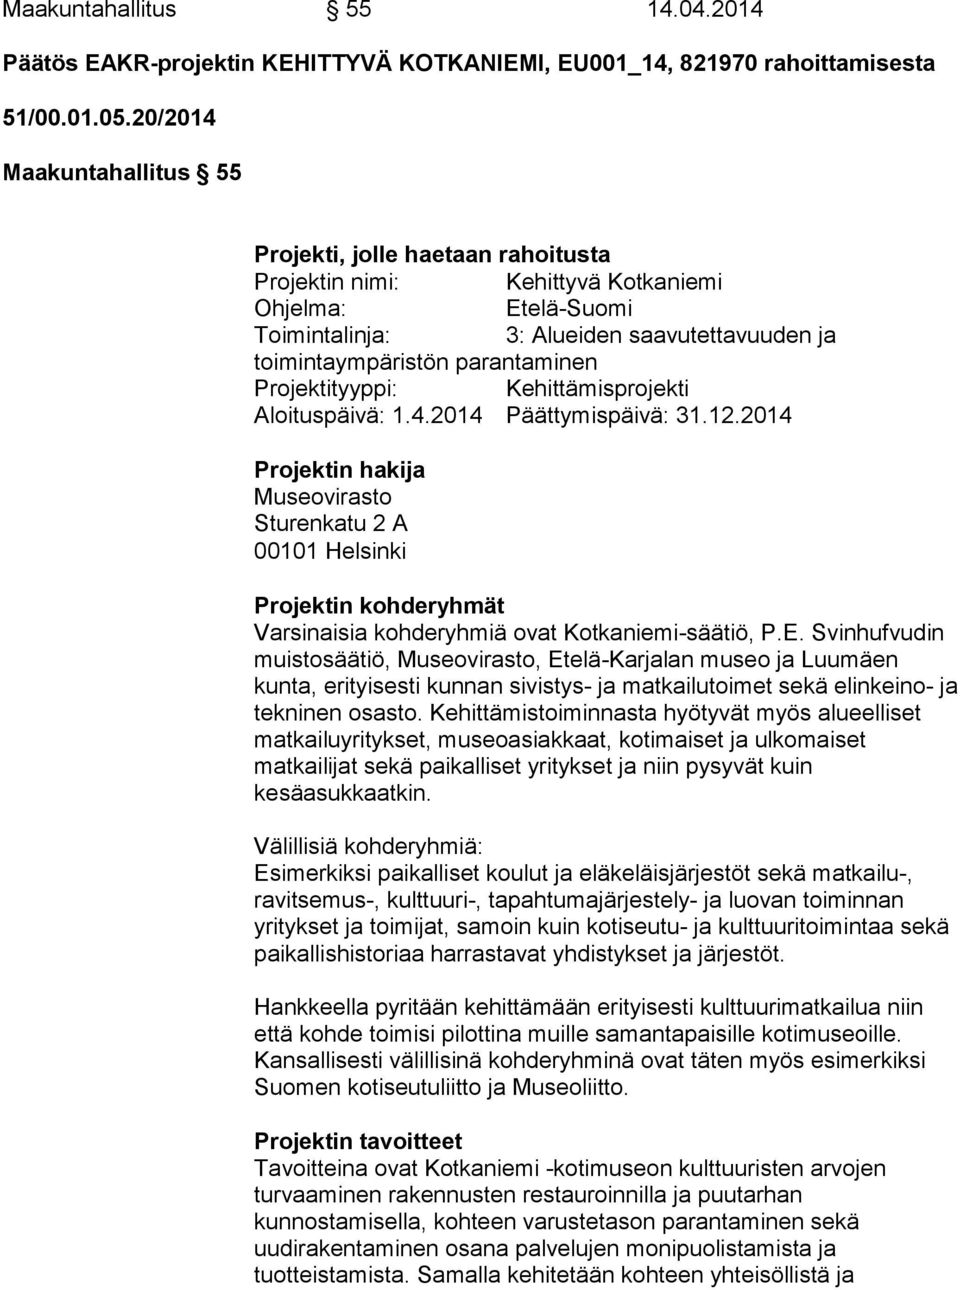 Projektityyppi: Kehittämisprojekti Aloituspäivä: 1.4.2014 Päättymispäivä: 31.12.